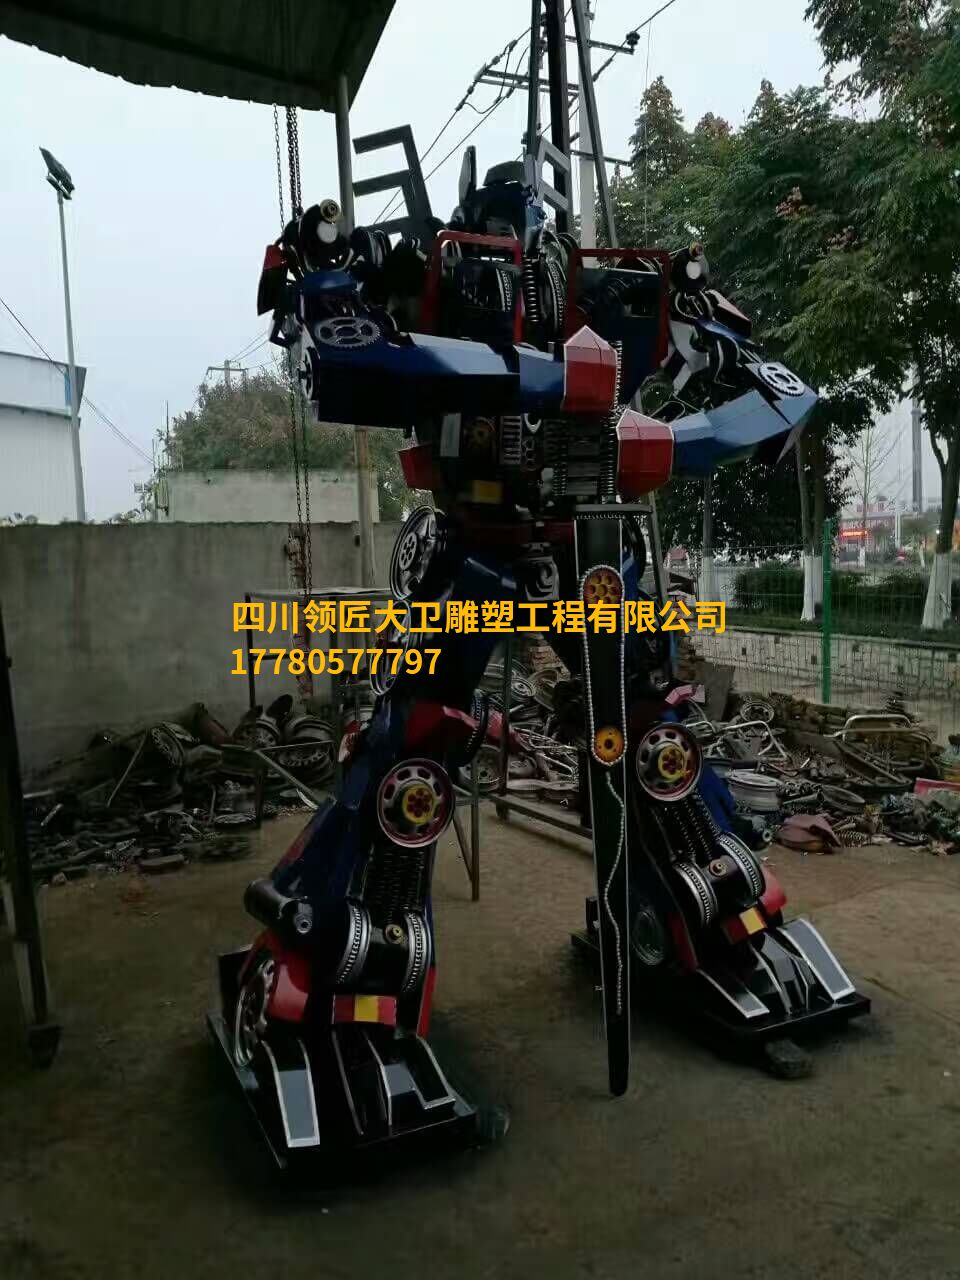 钢铁机器人雕塑